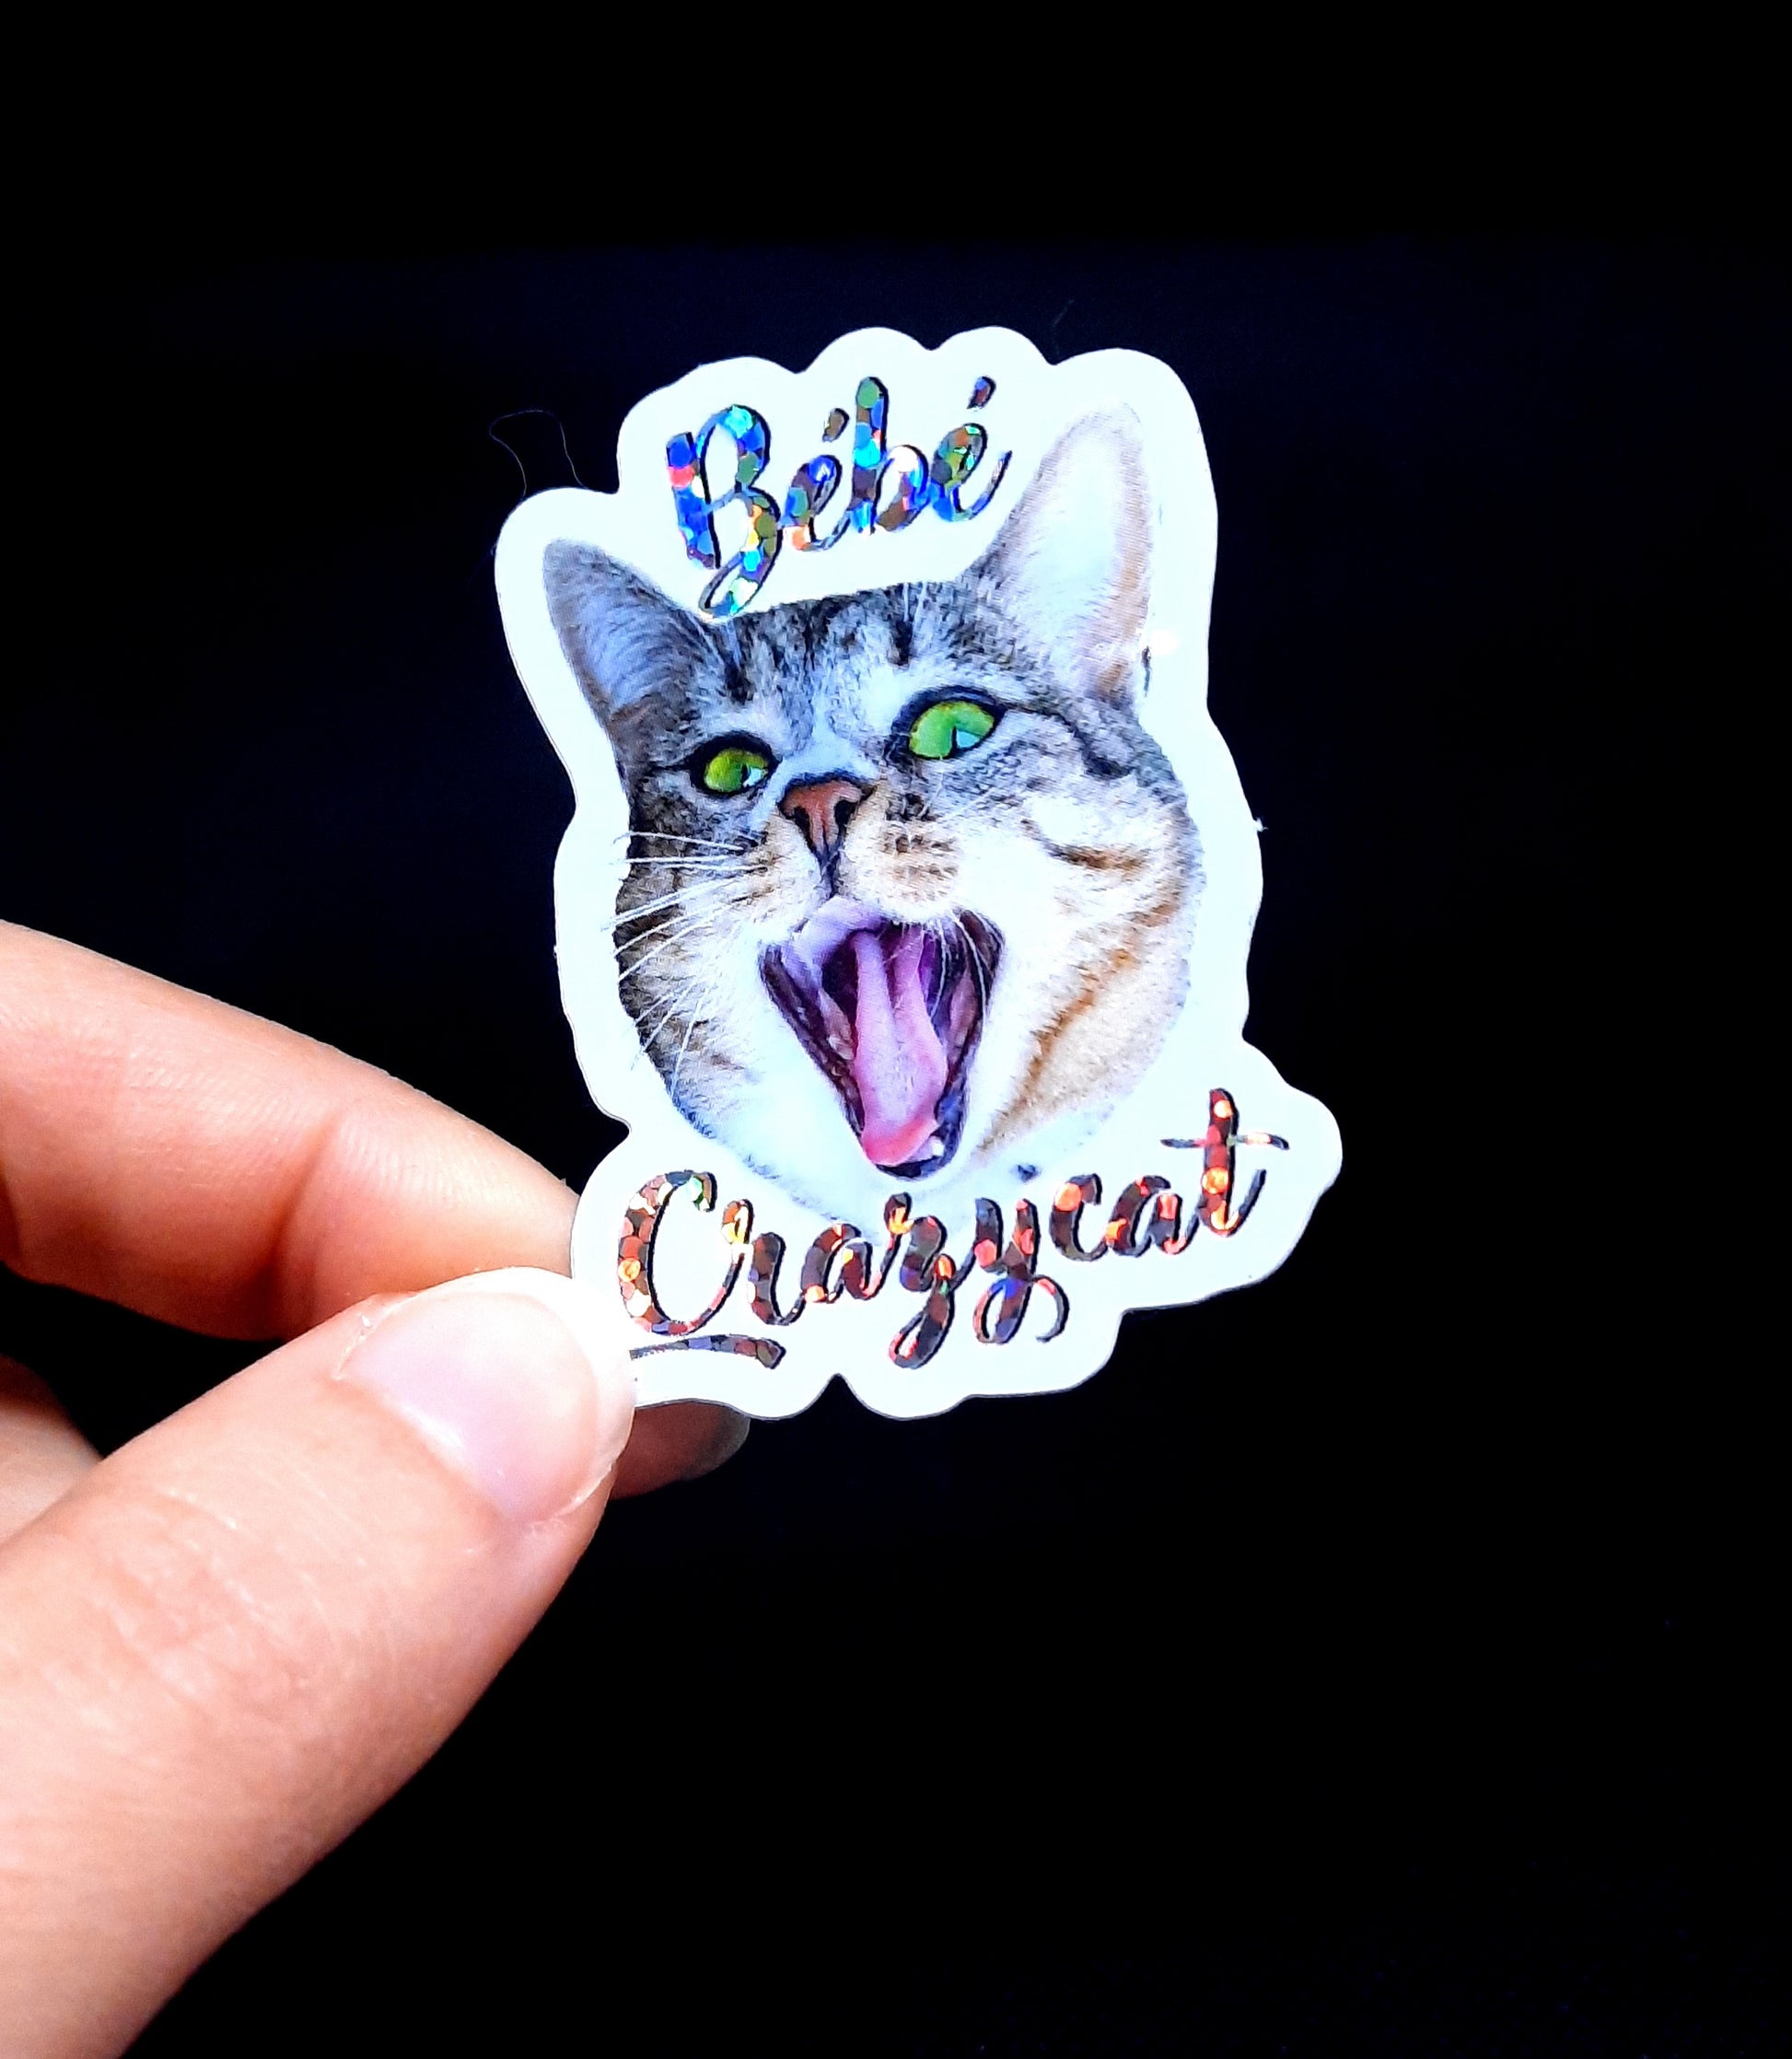 Sticker Bébé Crazycat paillettes